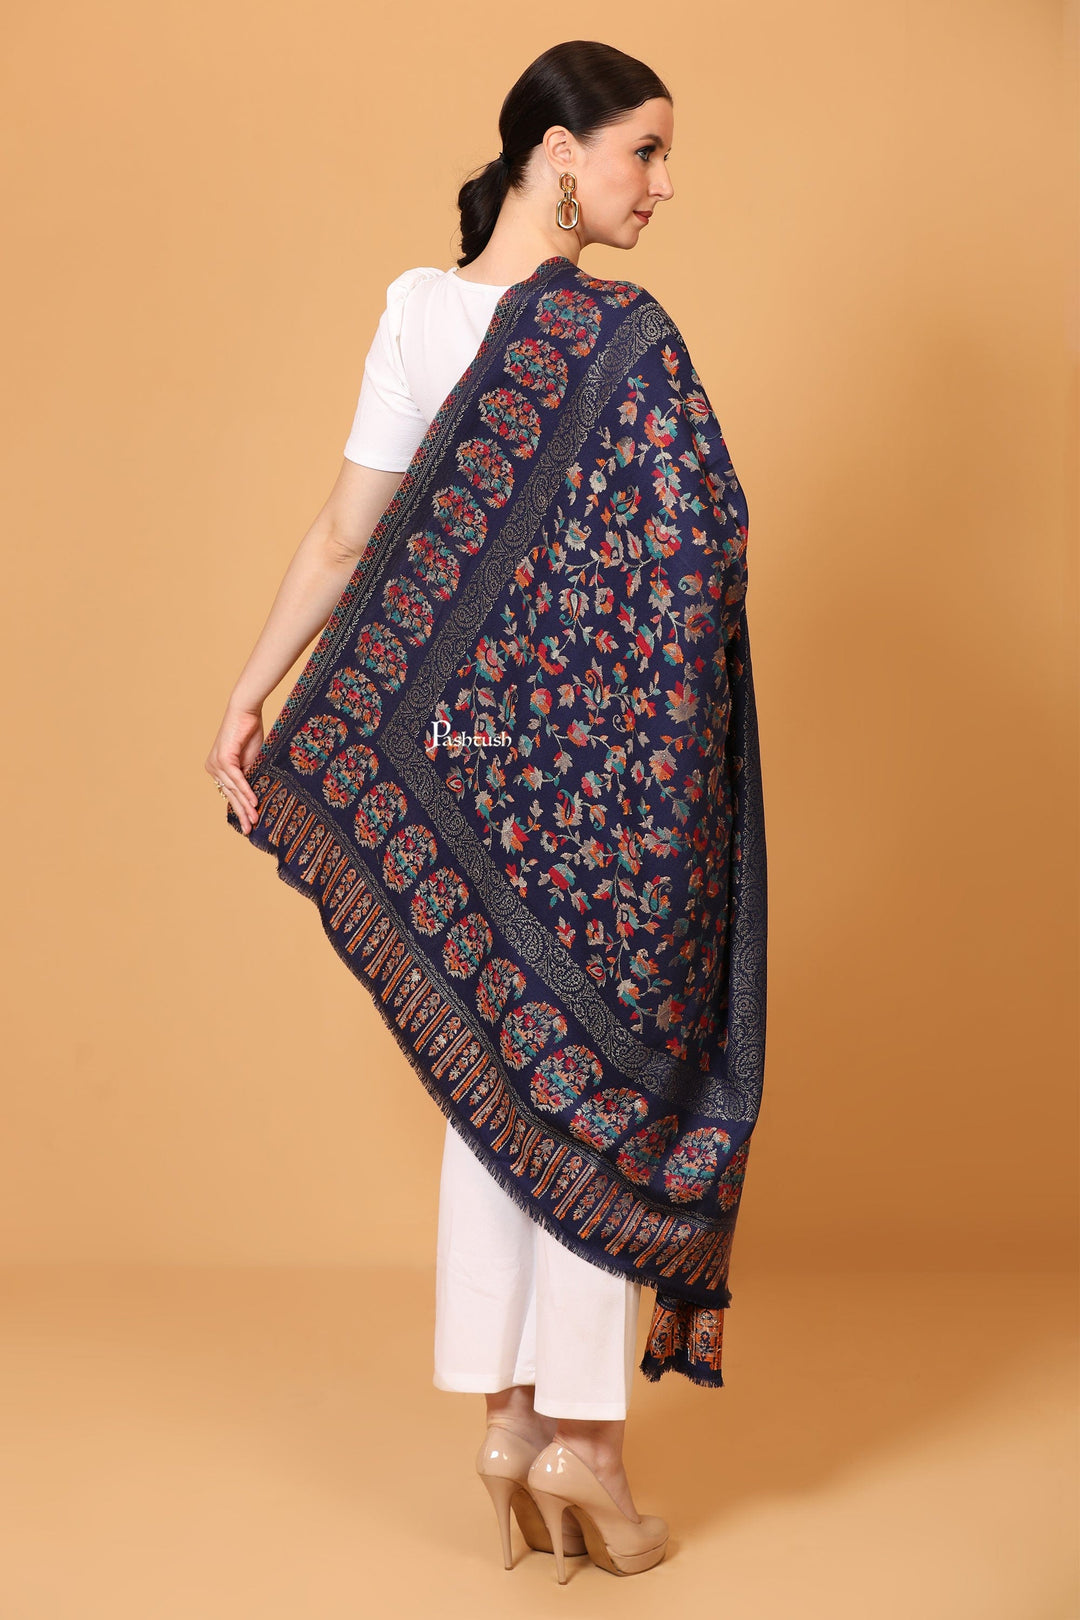 Pashtush India Womens Shawls Pashtush womens Faux Pashmina shawl, Woven Paisely design, Blue